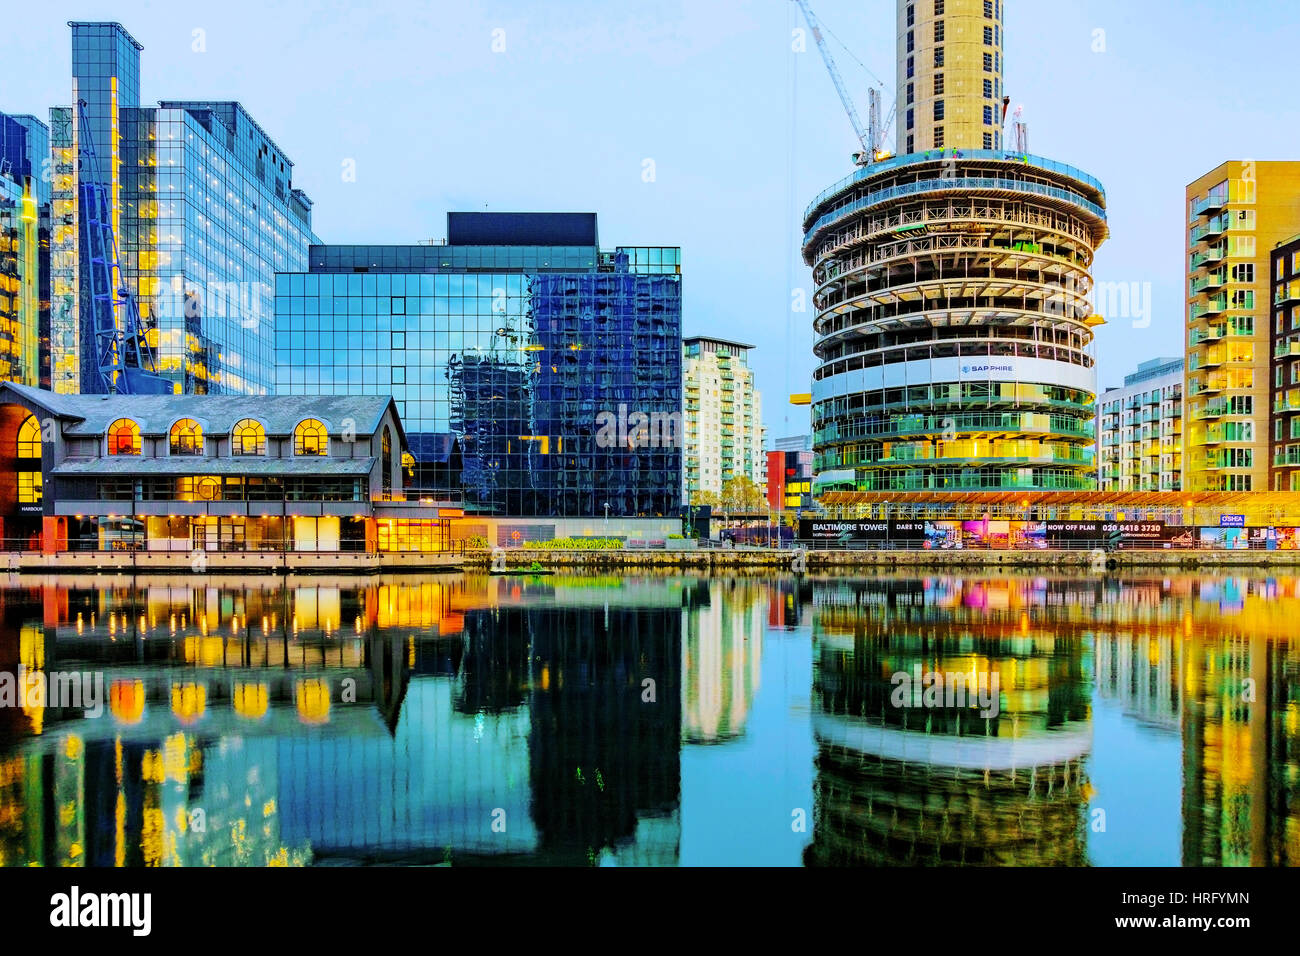 Londra - 30 ottobre: si tratta di Canary Wharf Londra principale quartiere finanziario dove si possono vedere molti grattacieli si illuminano di notte tempo su Ottobre 30th, Foto Stock